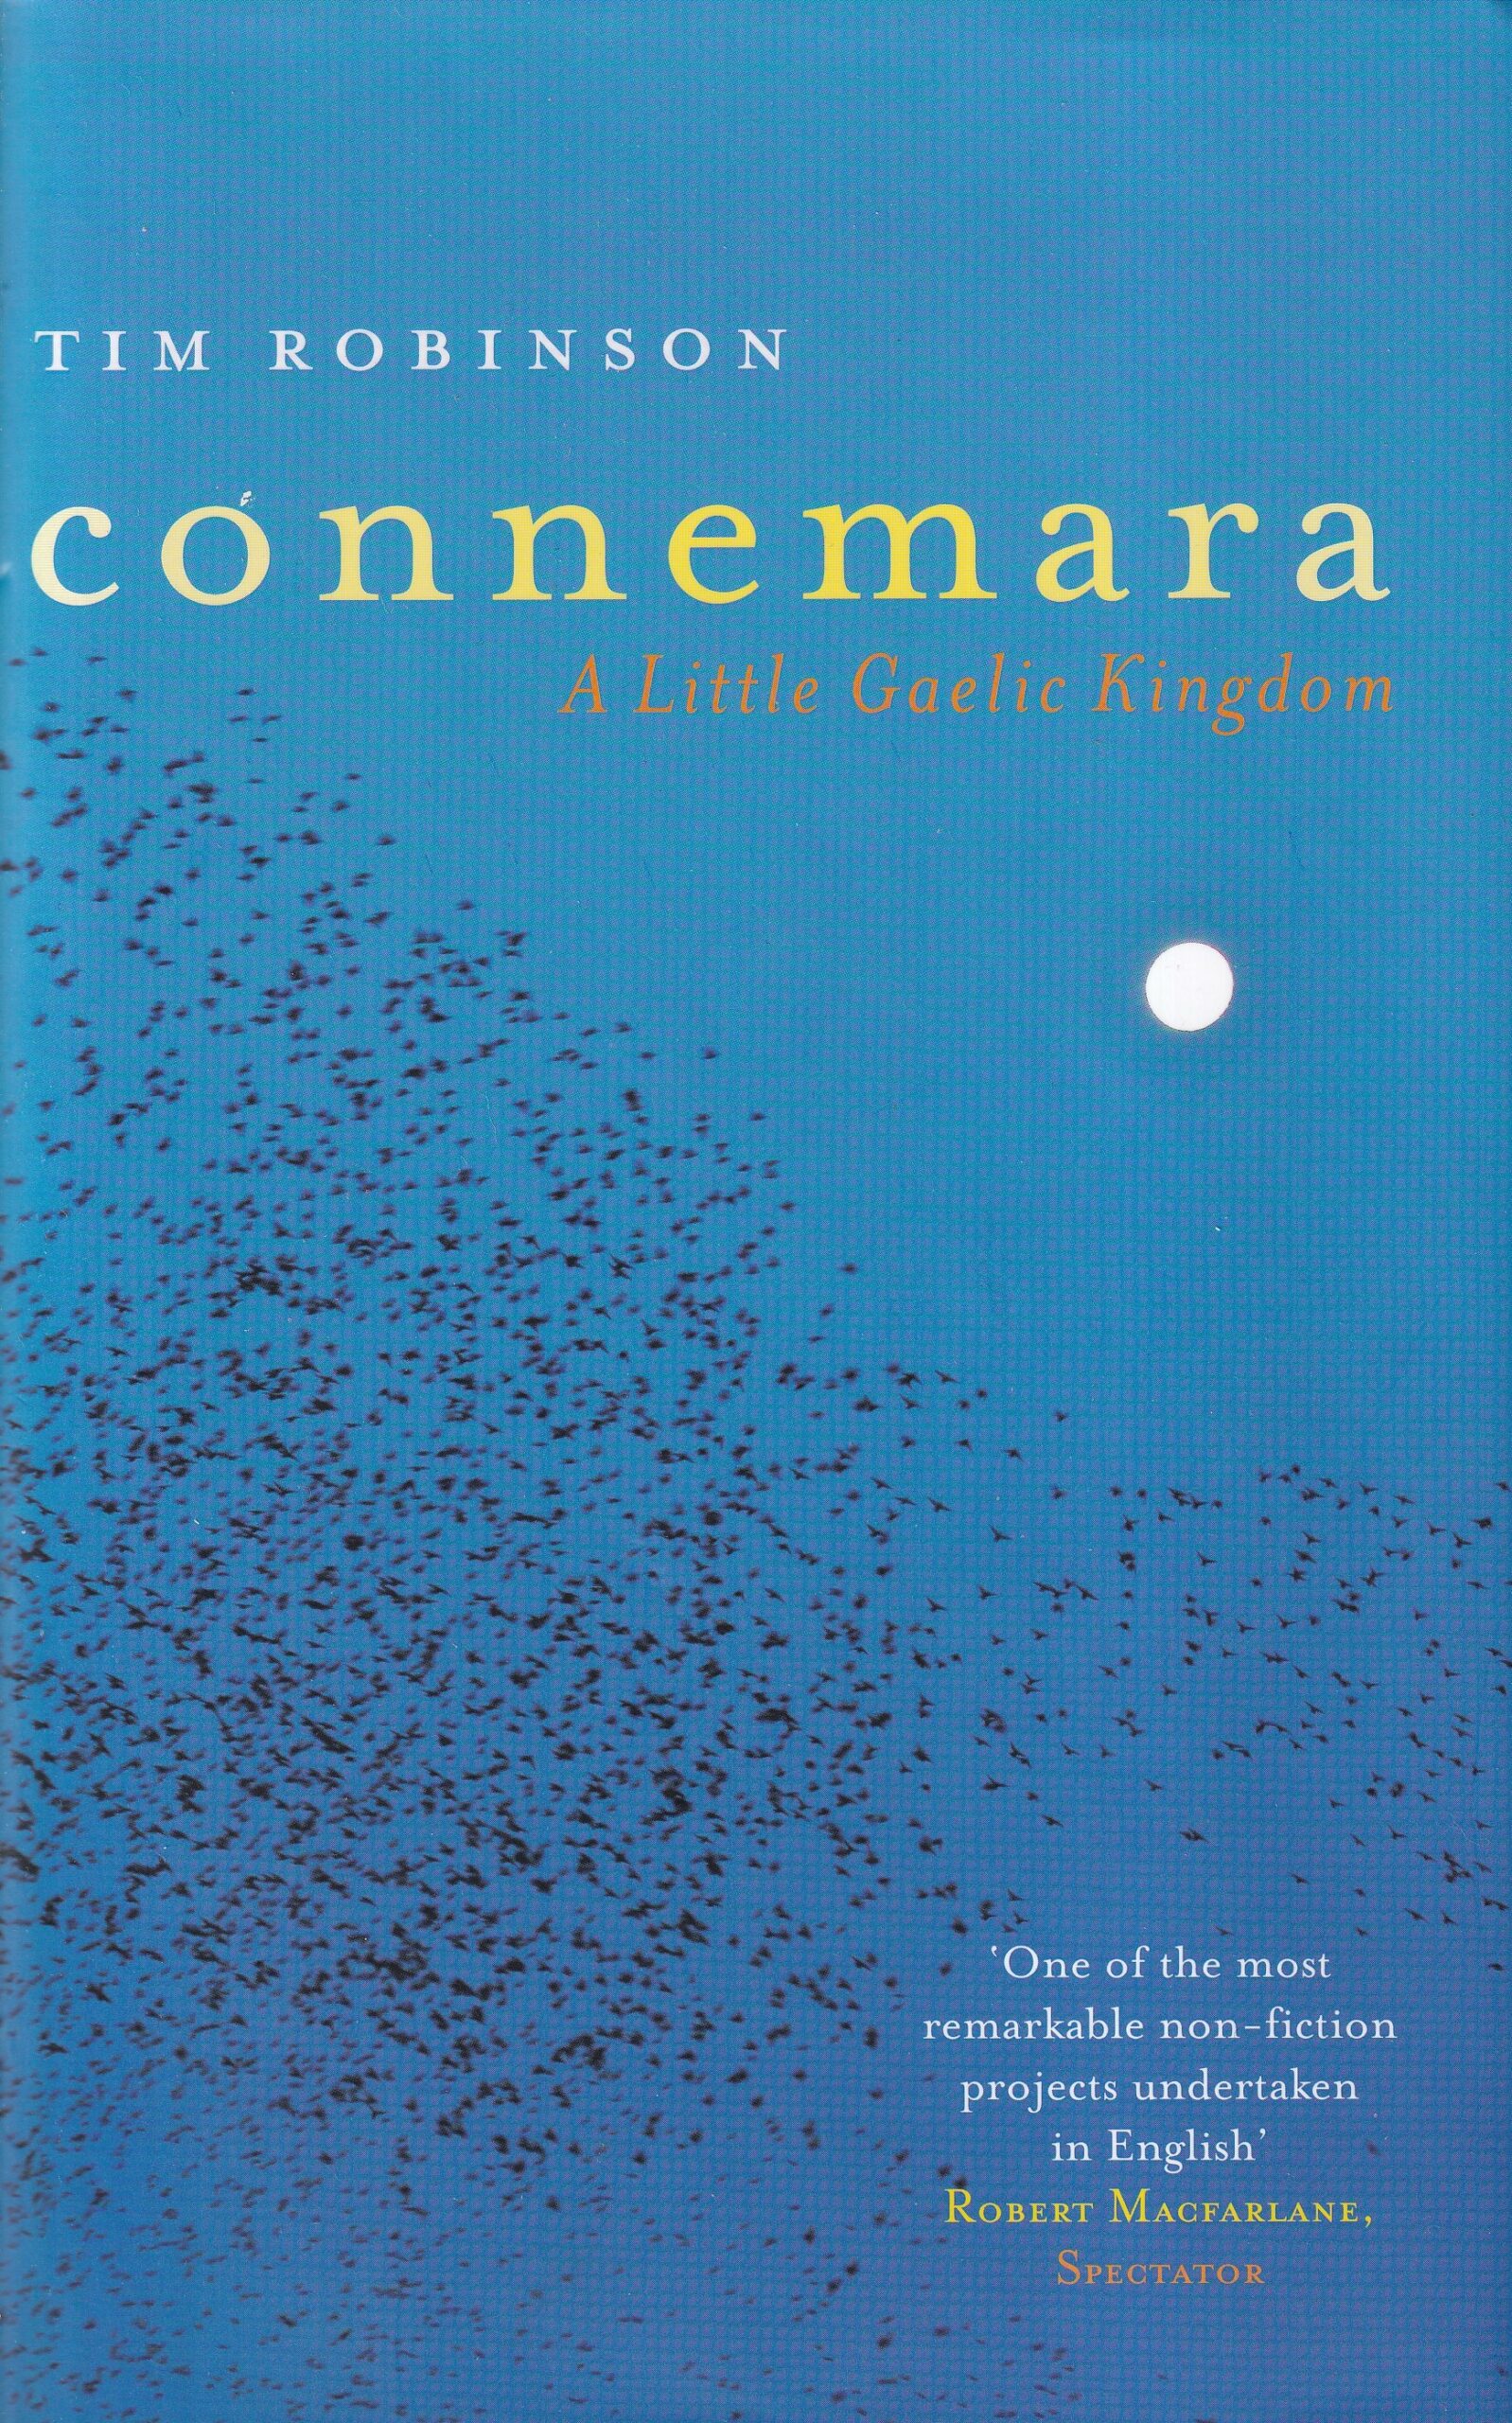 Connemara: A Little Gaelic Kingdom | Tim Robinson | Charlie Byrne's